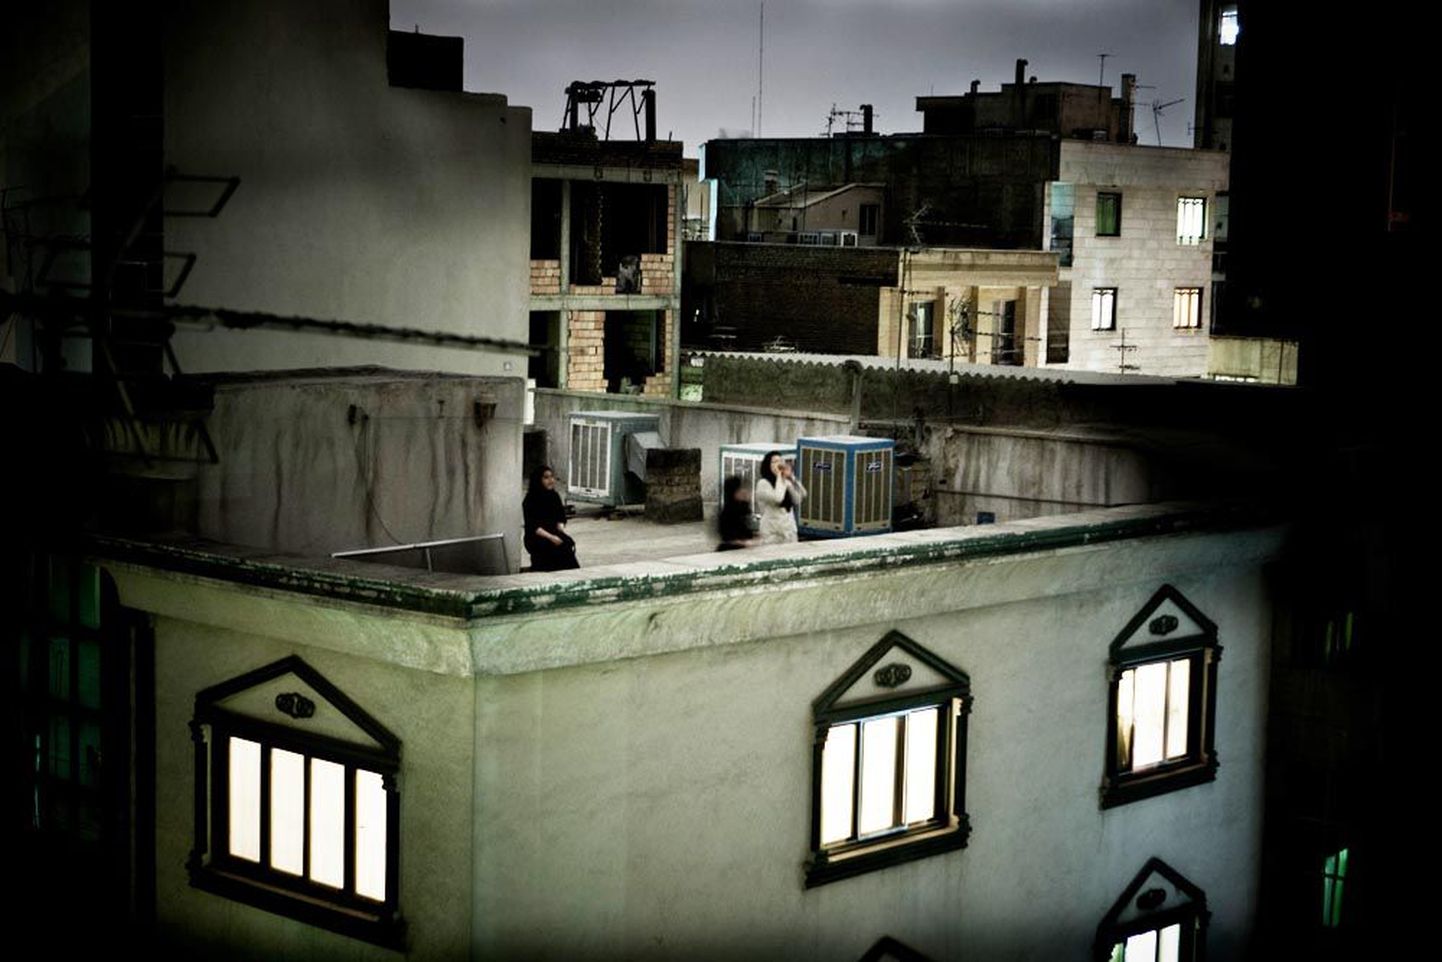 Eelmise aasta maailma parim pressifoto. Foto autor Pietro Masturzo tegi fotoloo Iraanis valitsevast meeleolust pärast presidendivalimisi, tabades muu hulgas katusel valimistulemuste pärast endast välja aetud naise.